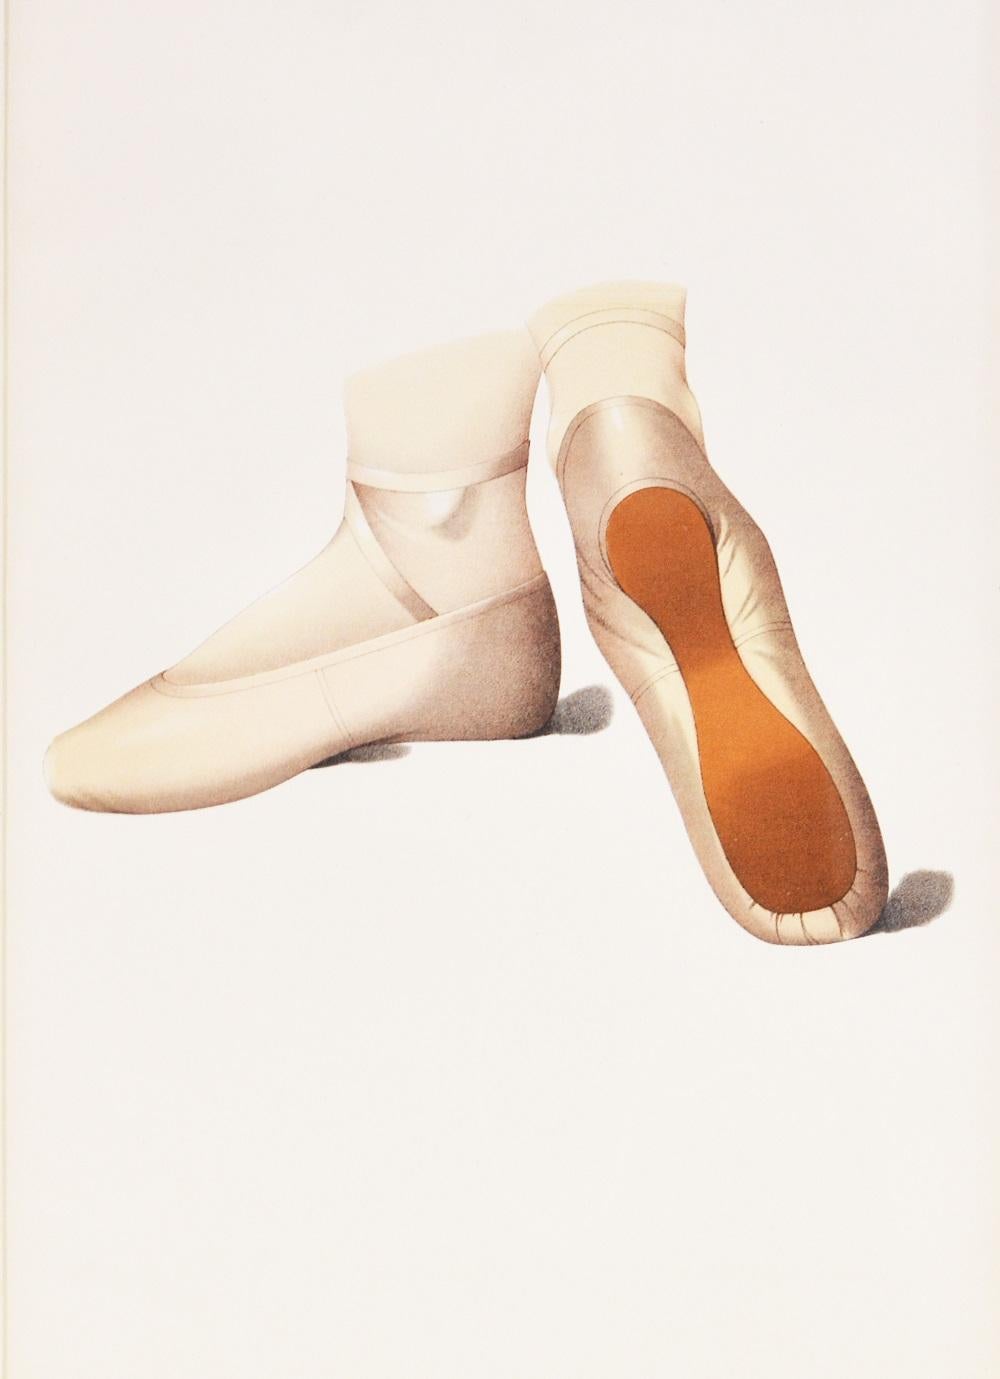 ballet shoe inside